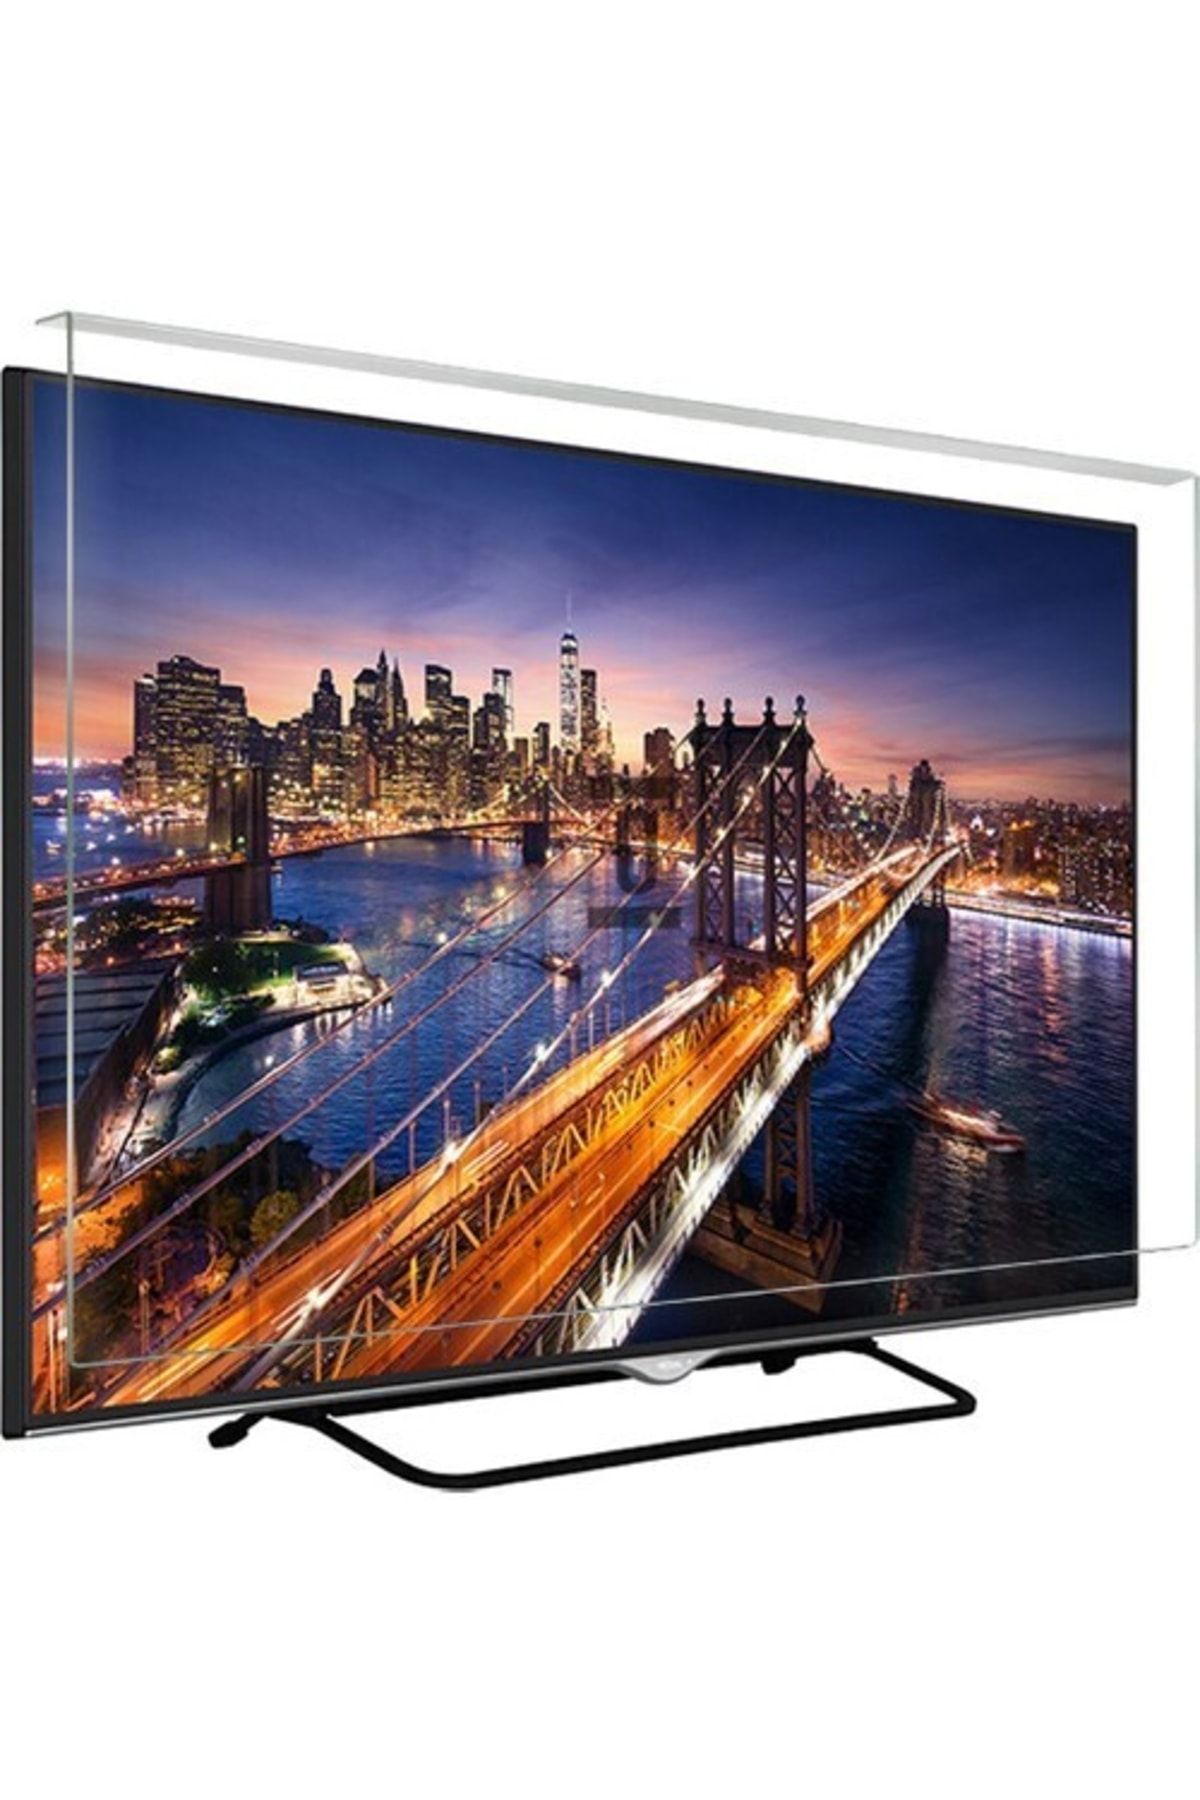 Telenova Asaf Online-evçelik 50u9002 Tv Ekran Koruyucu Düz (flat) Ekran